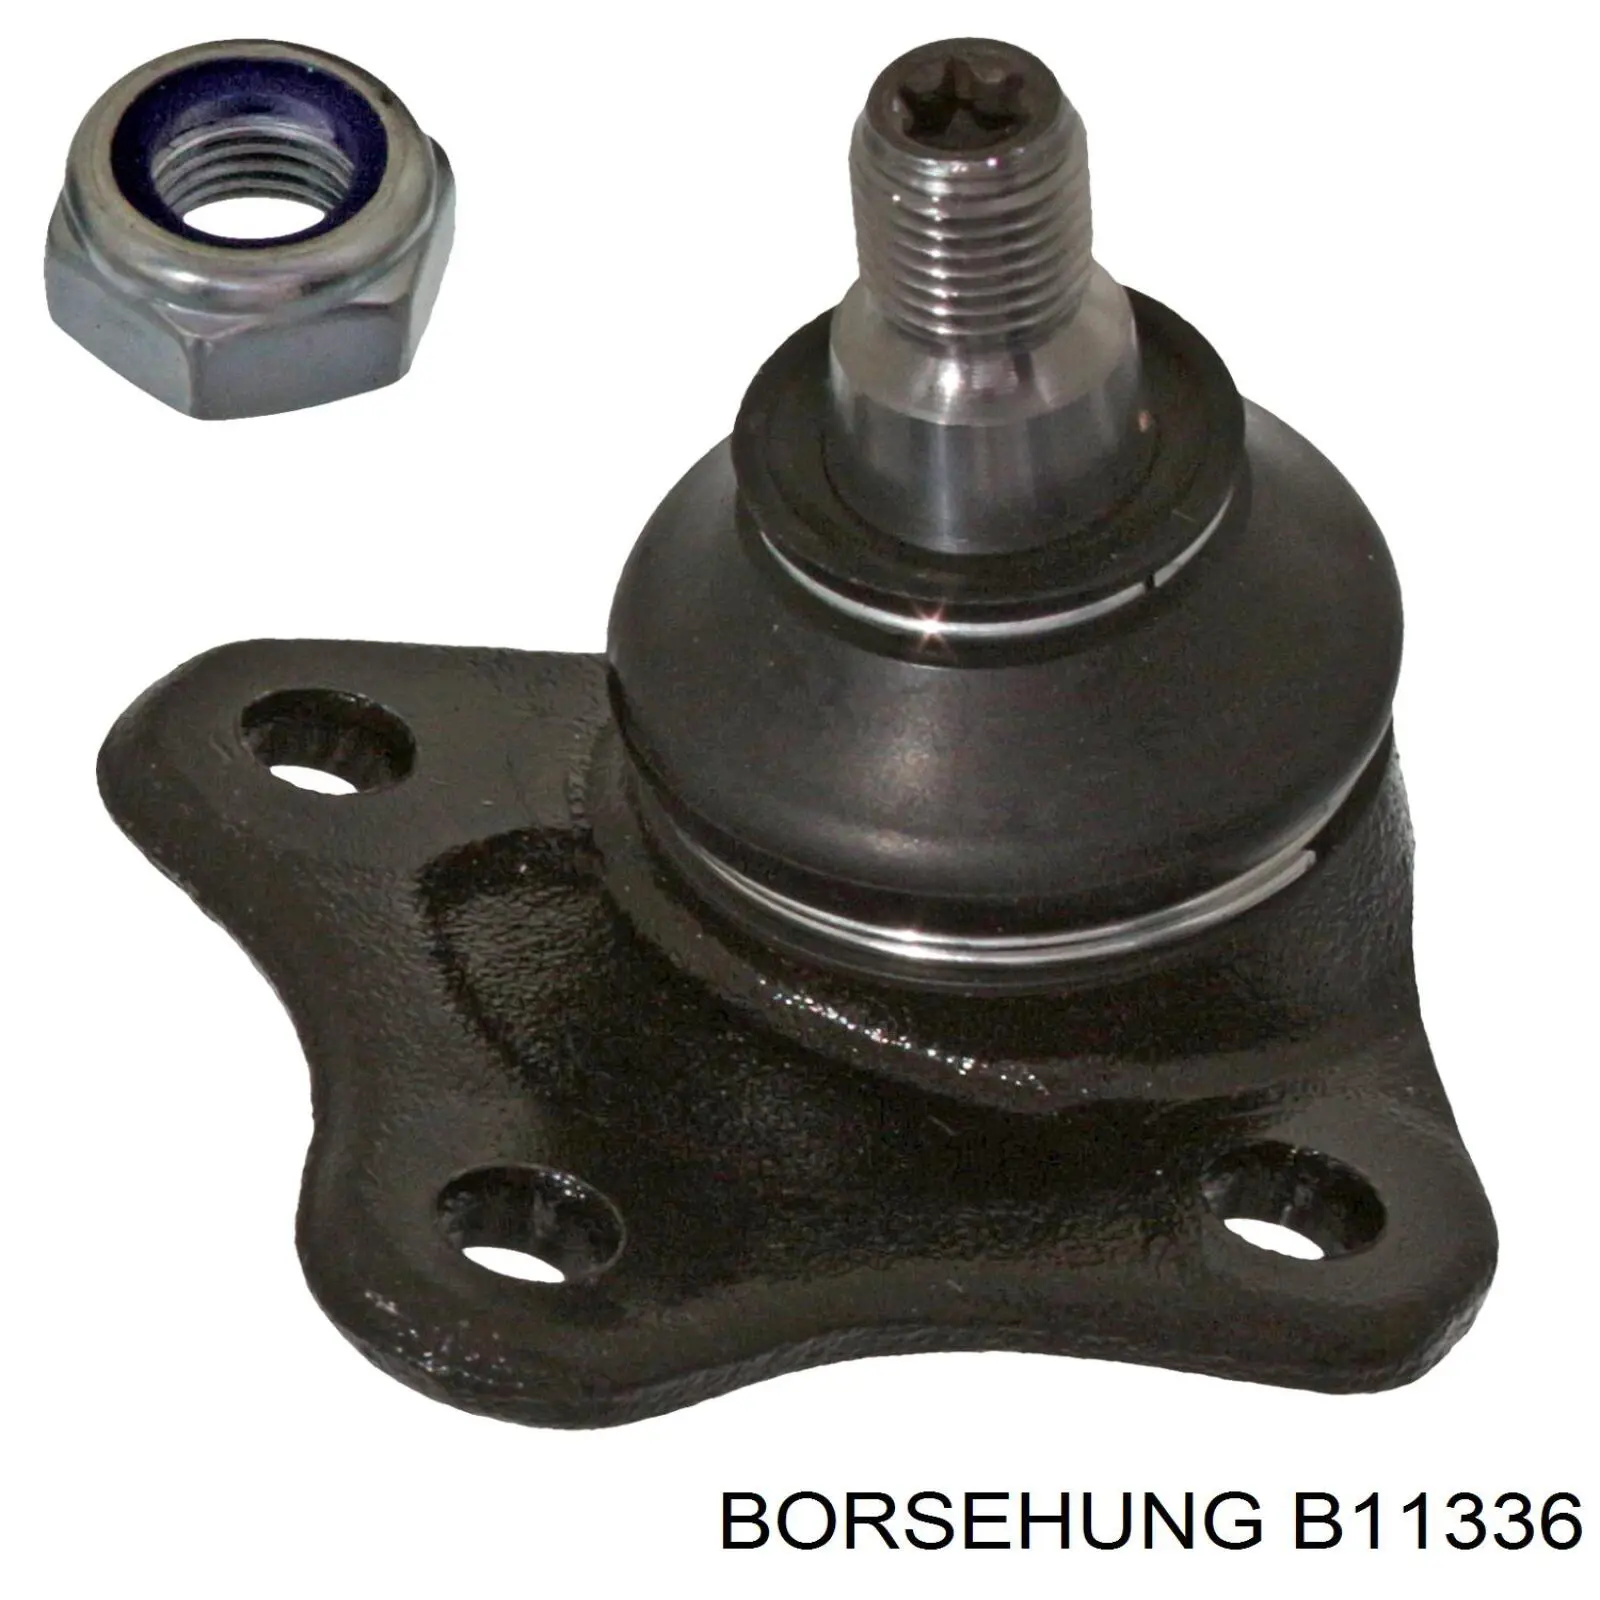 B11336 Borsehung rótula de suspensión inferior izquierda